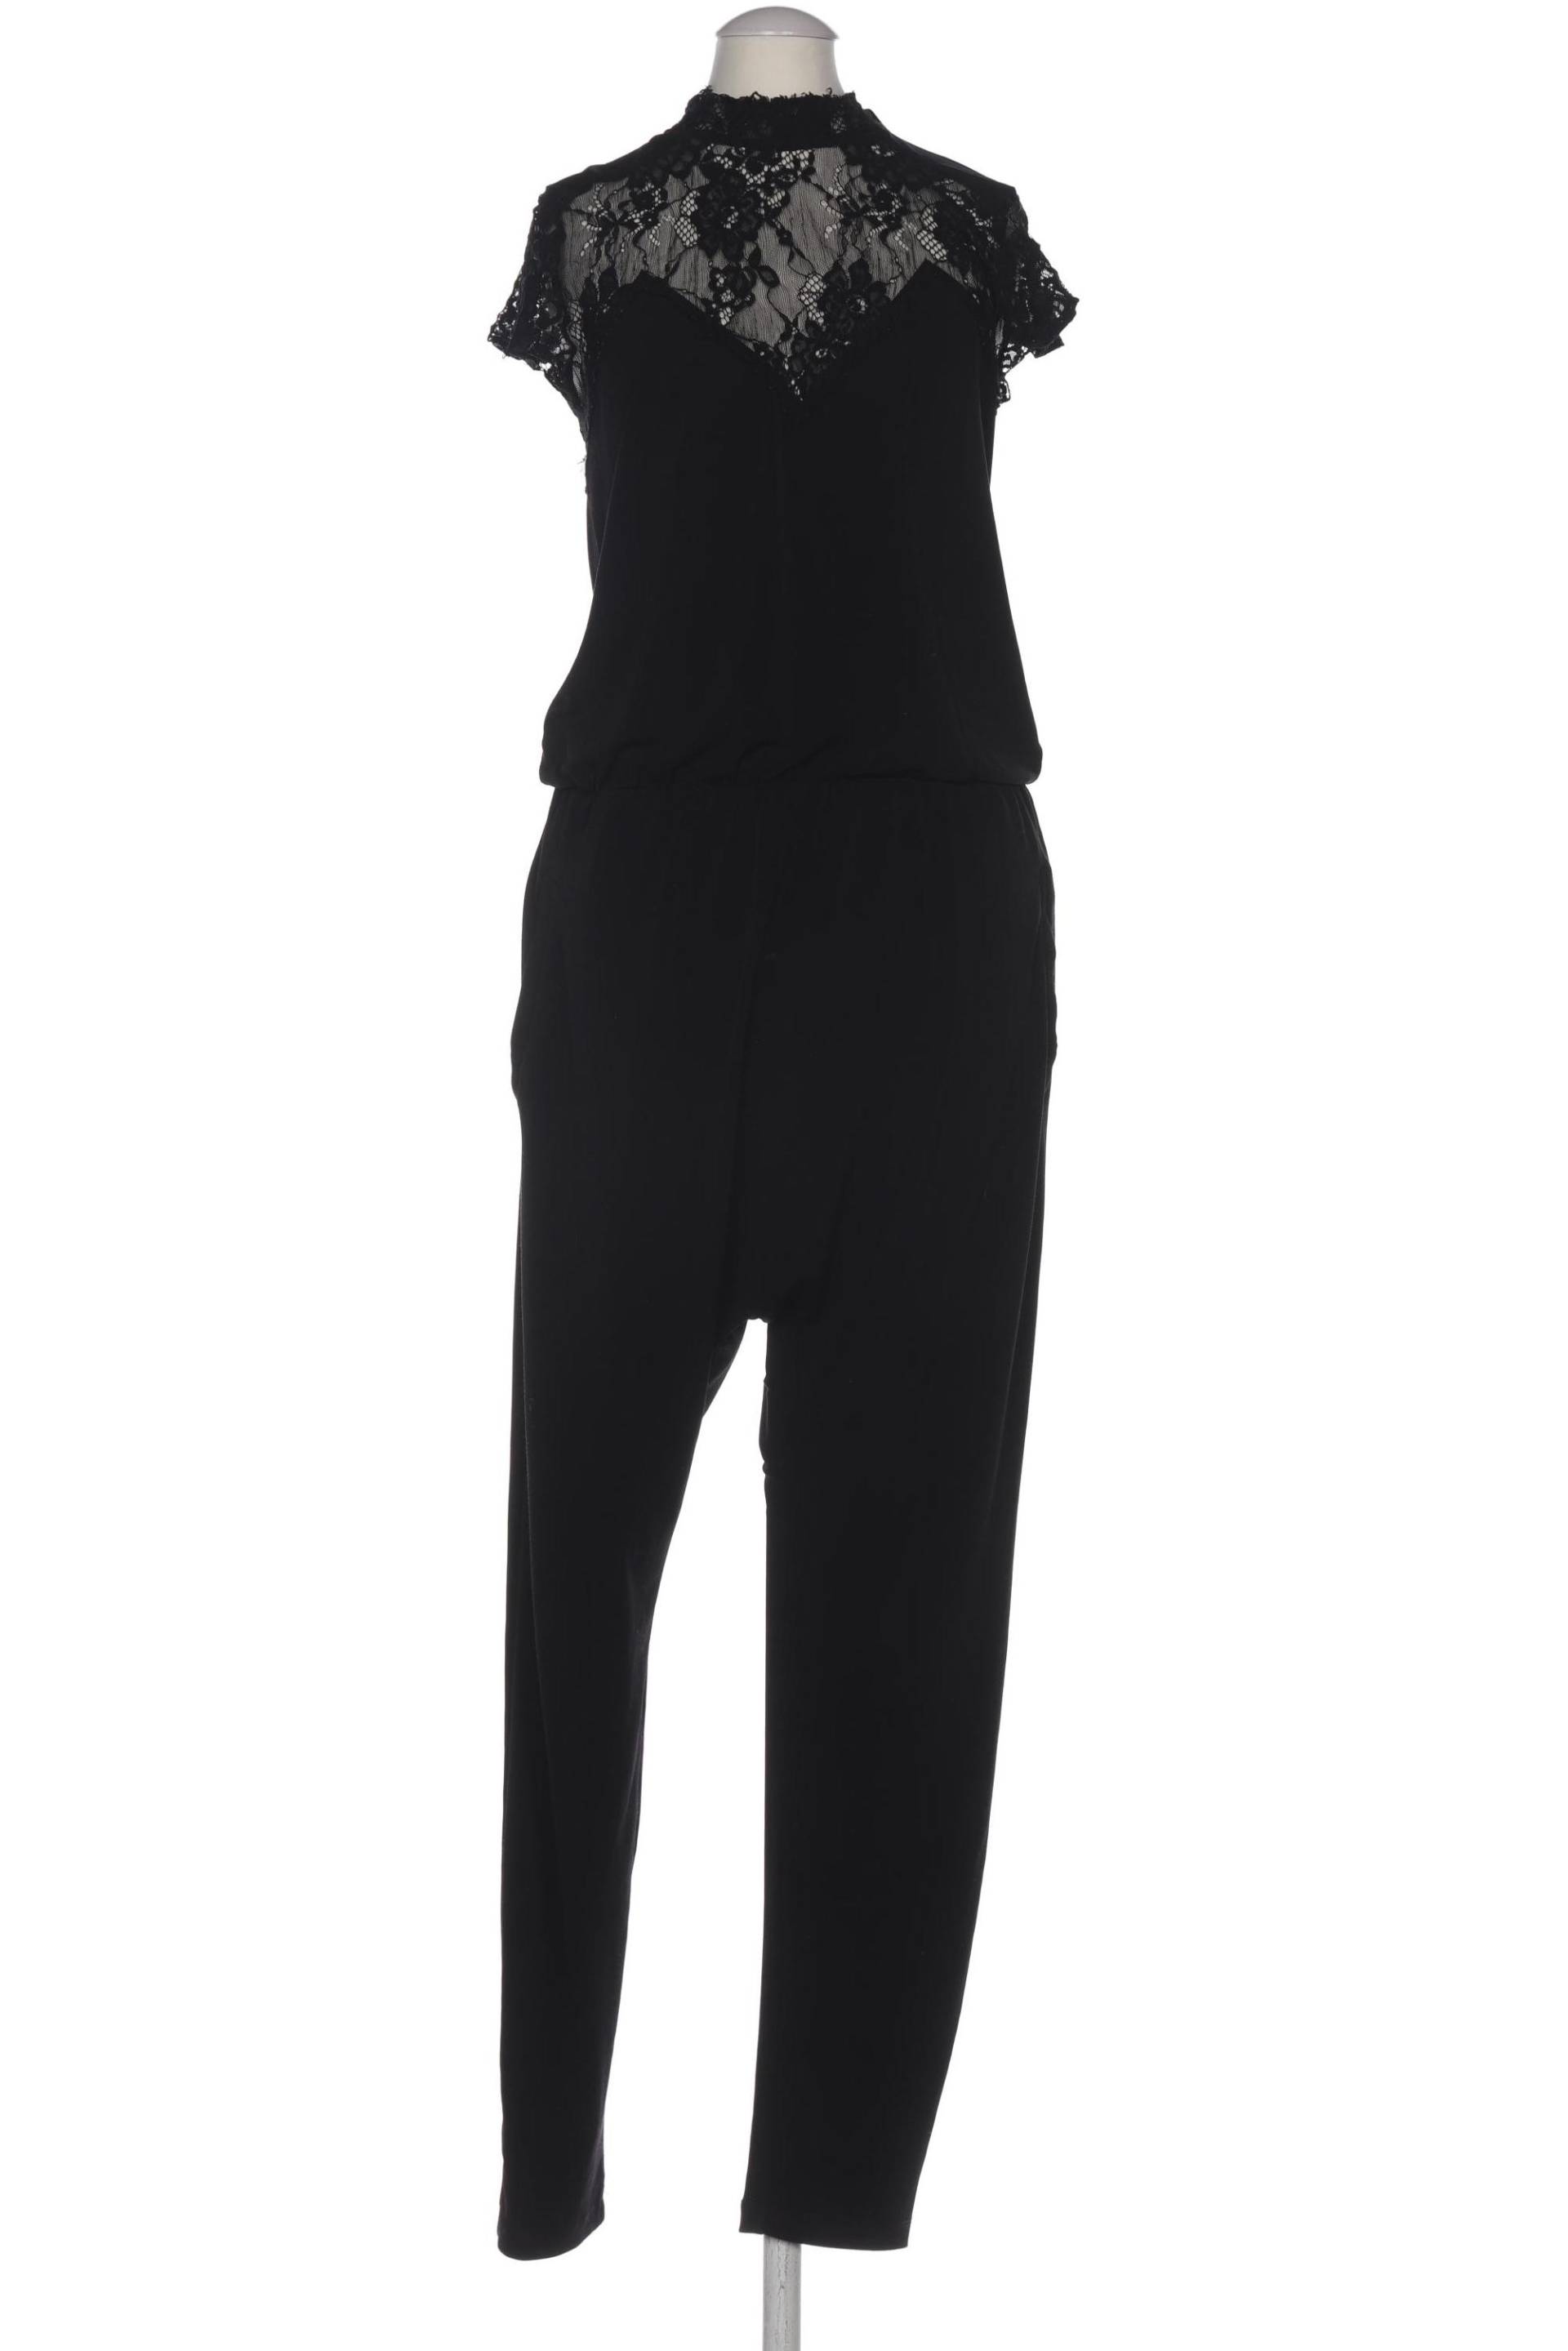 tigha Damen Jumpsuit/Overall, schwarz, Gr. 34 von tigha